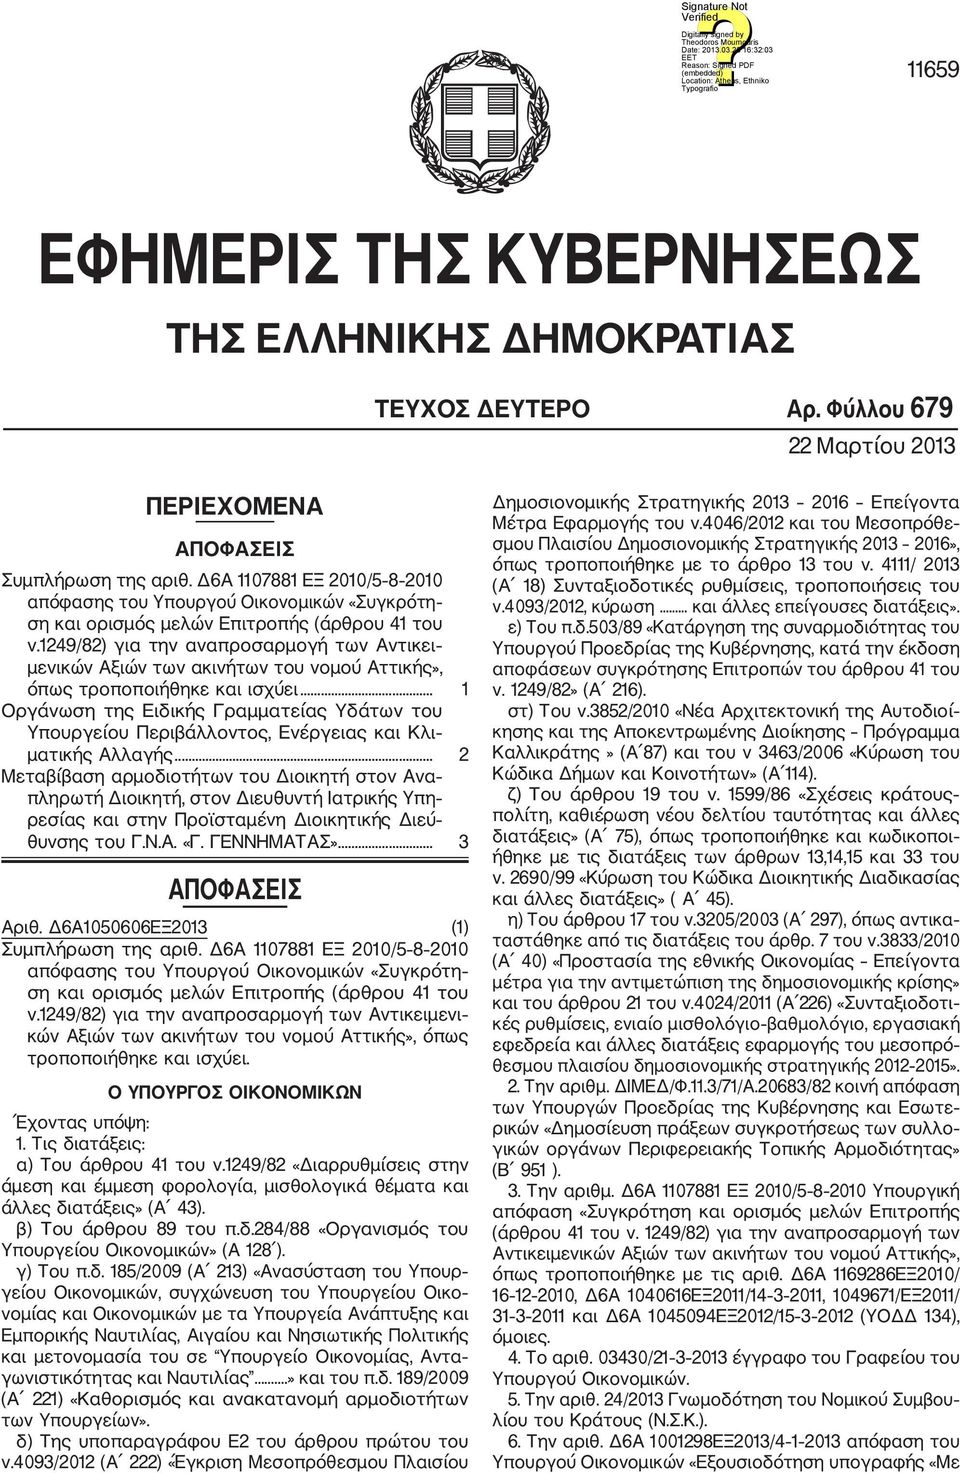 1249/82) για την αναπροσαρμογή των Αντικει μενικών Αξιών των ακινήτων του νομού Αττικής», όπως τροποποιήθηκε και ισχύει.